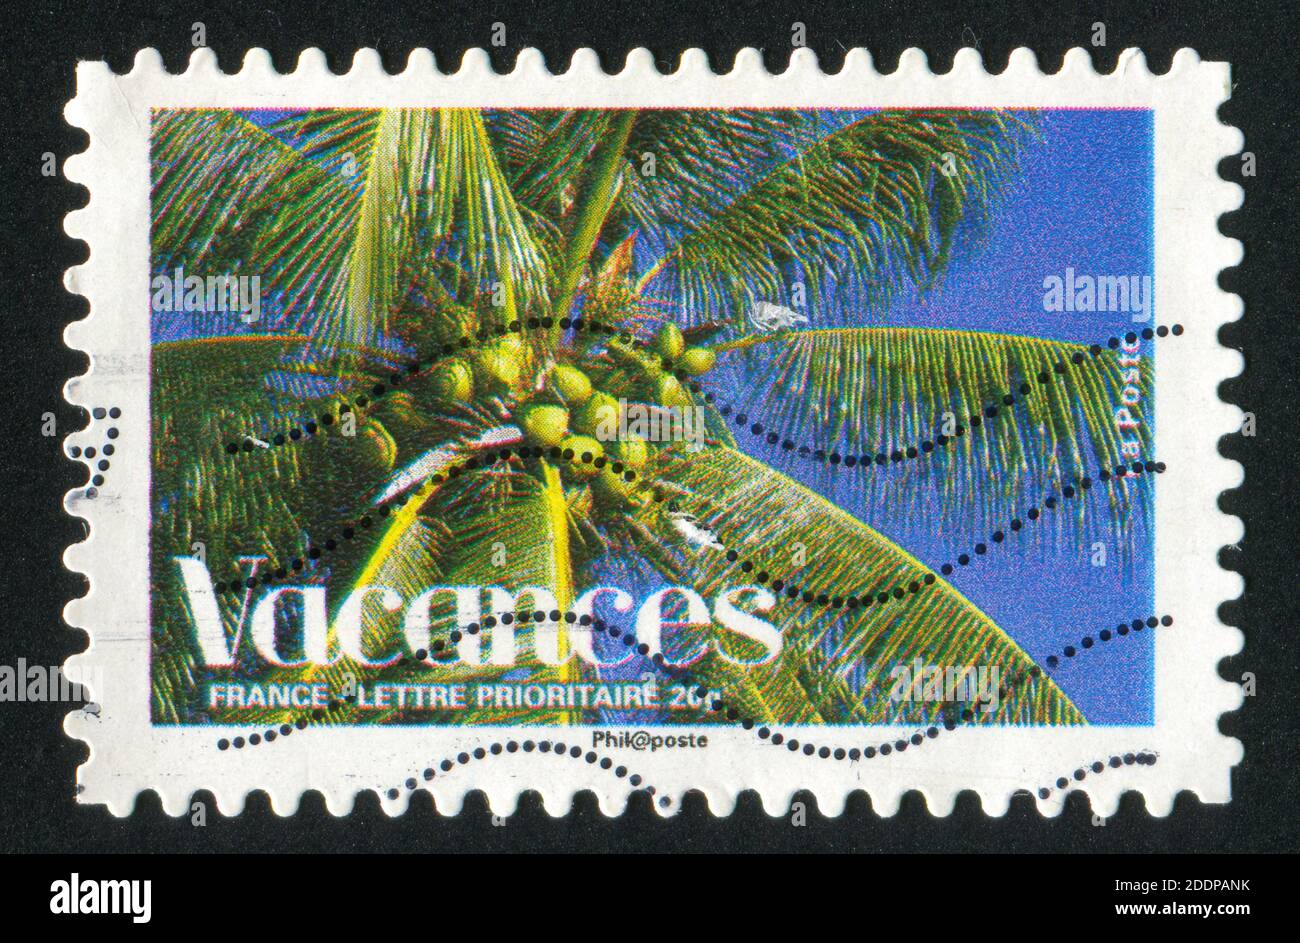 FRANKREICH - UM 2008: Briefmarke gedruckt von Frankreich, zeigt Palme, um 2008 Stockfoto